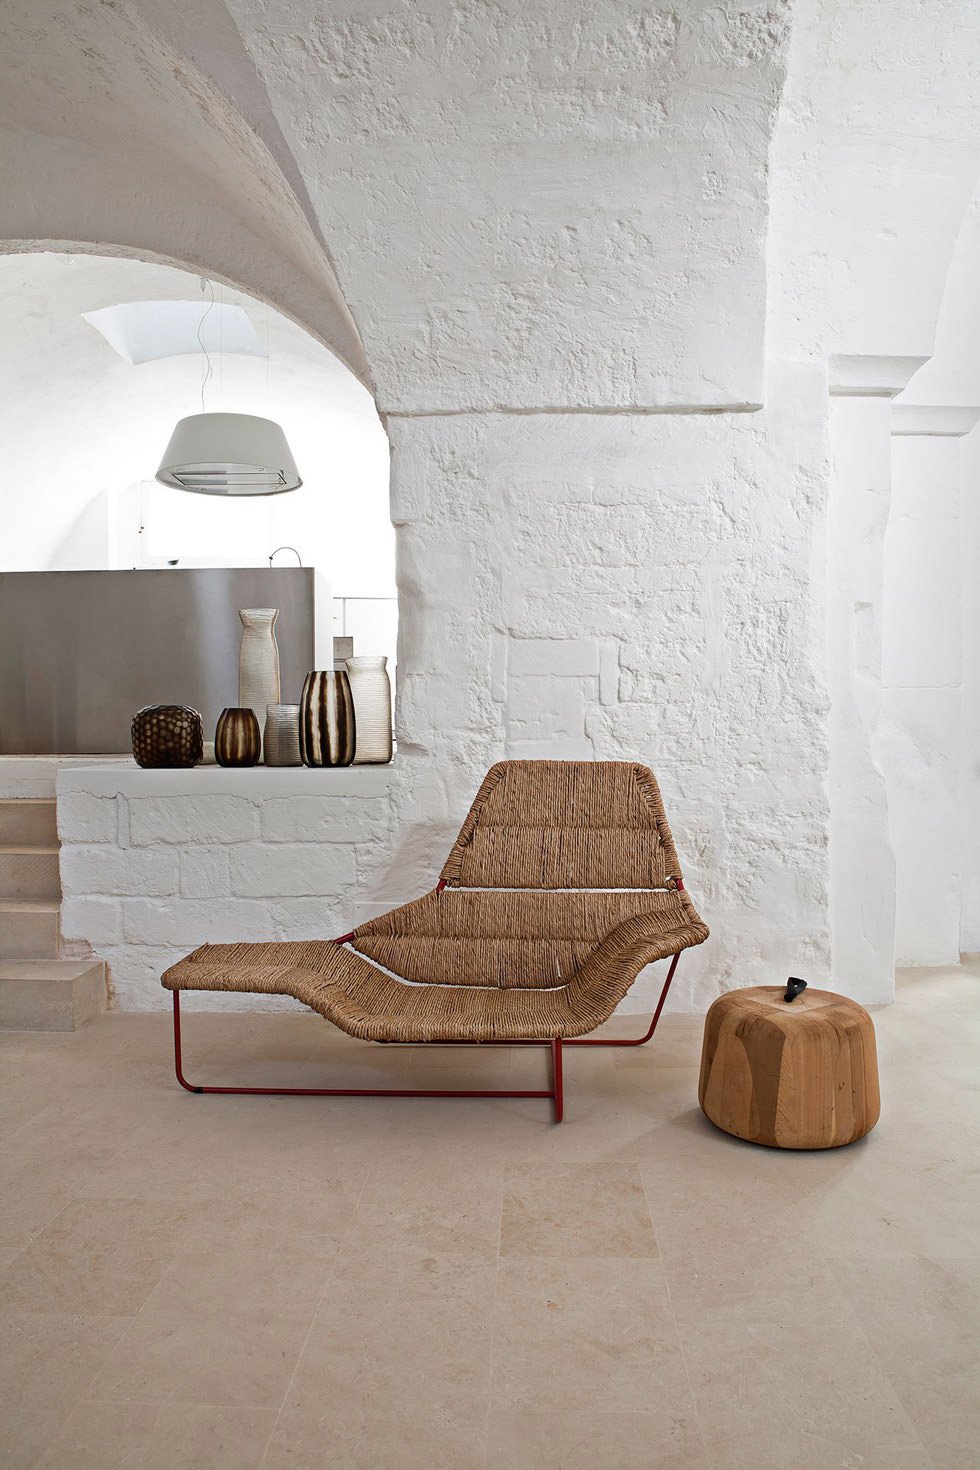 Arredi moderni in ambiente rustico. Sedia divano e vasi in ceramica - idee arredare e ristrutturare un rustico